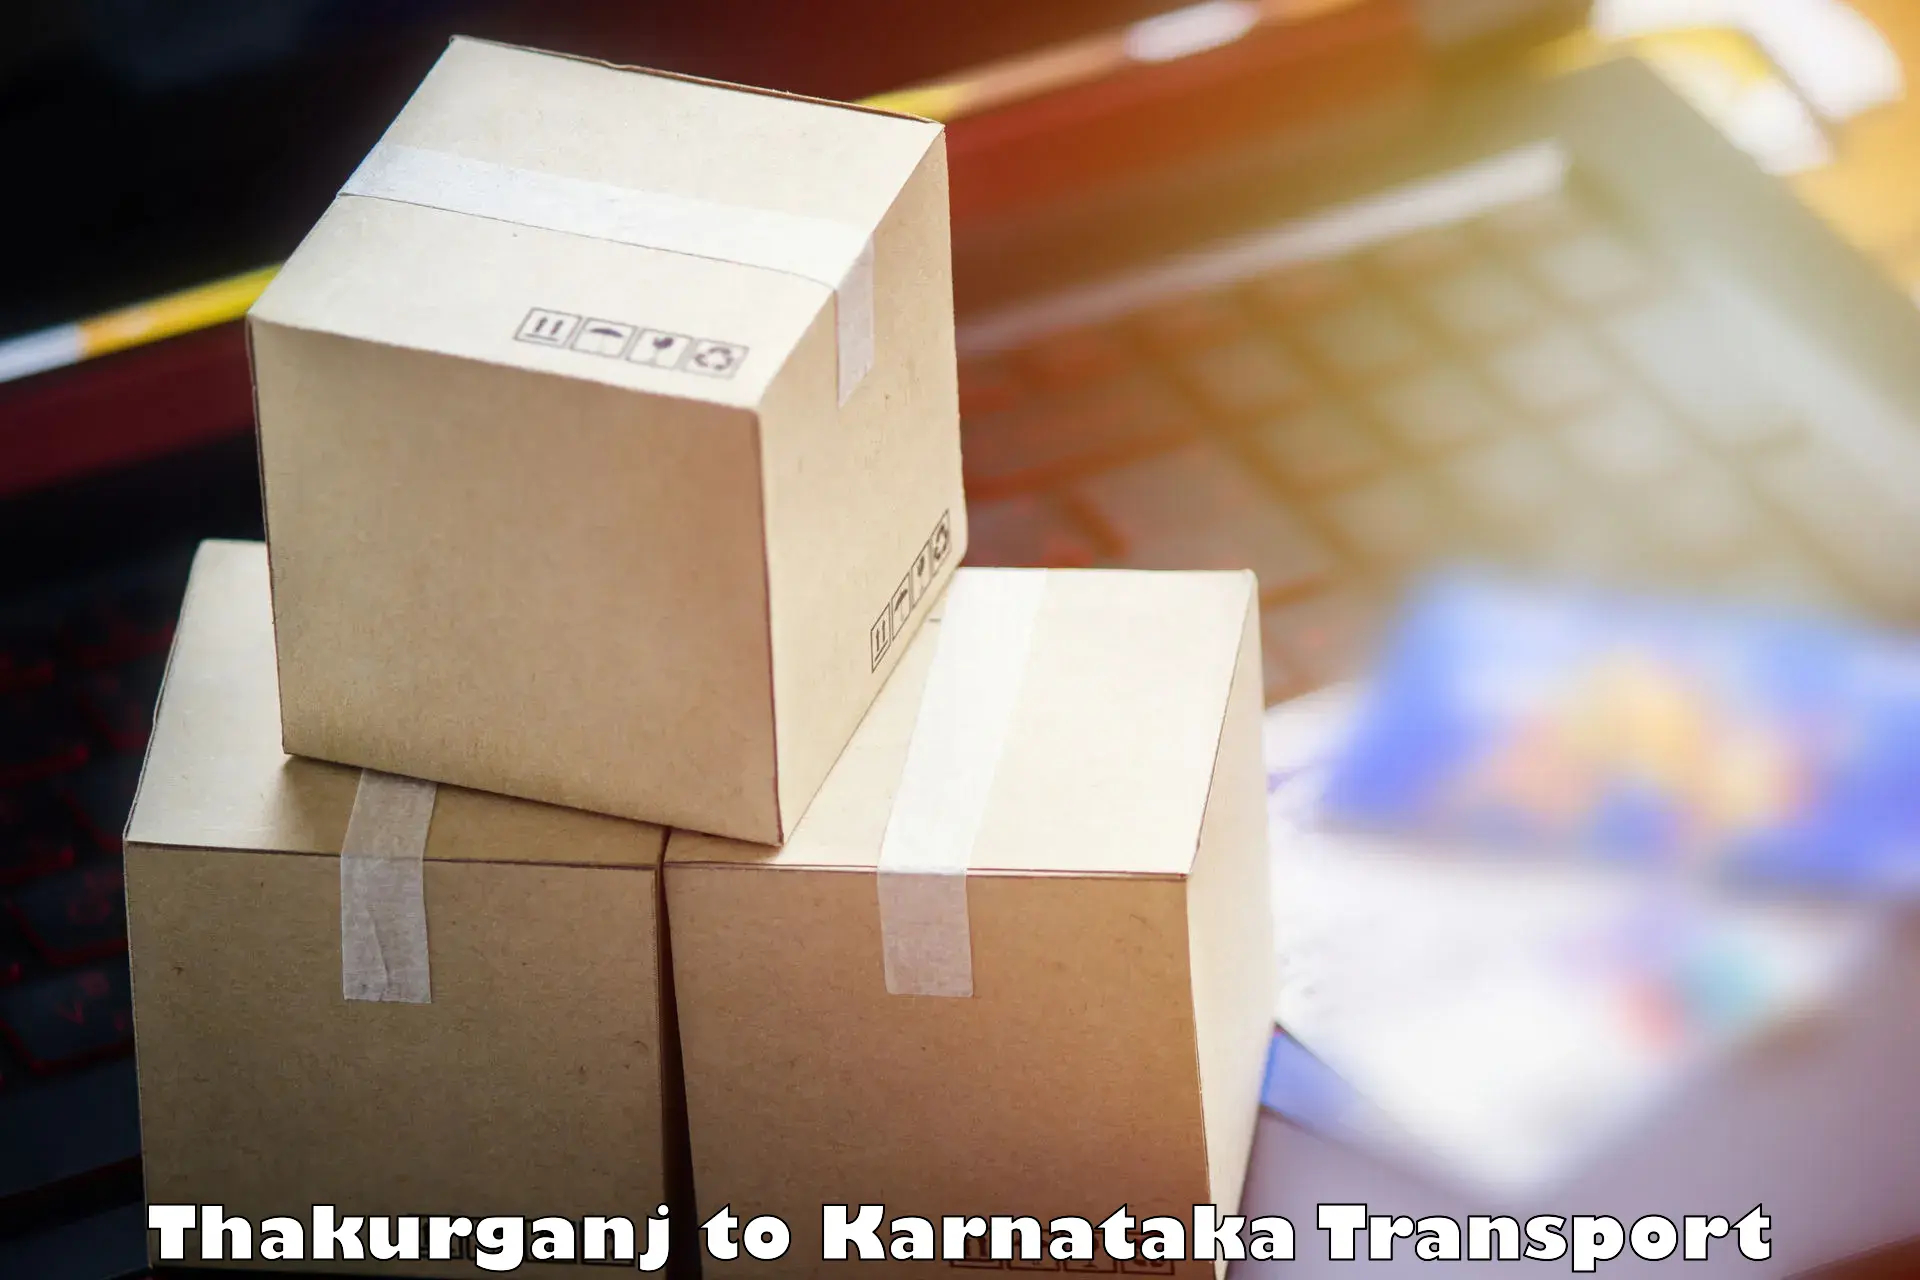 Furniture transport service Thakurganj to Karnataka